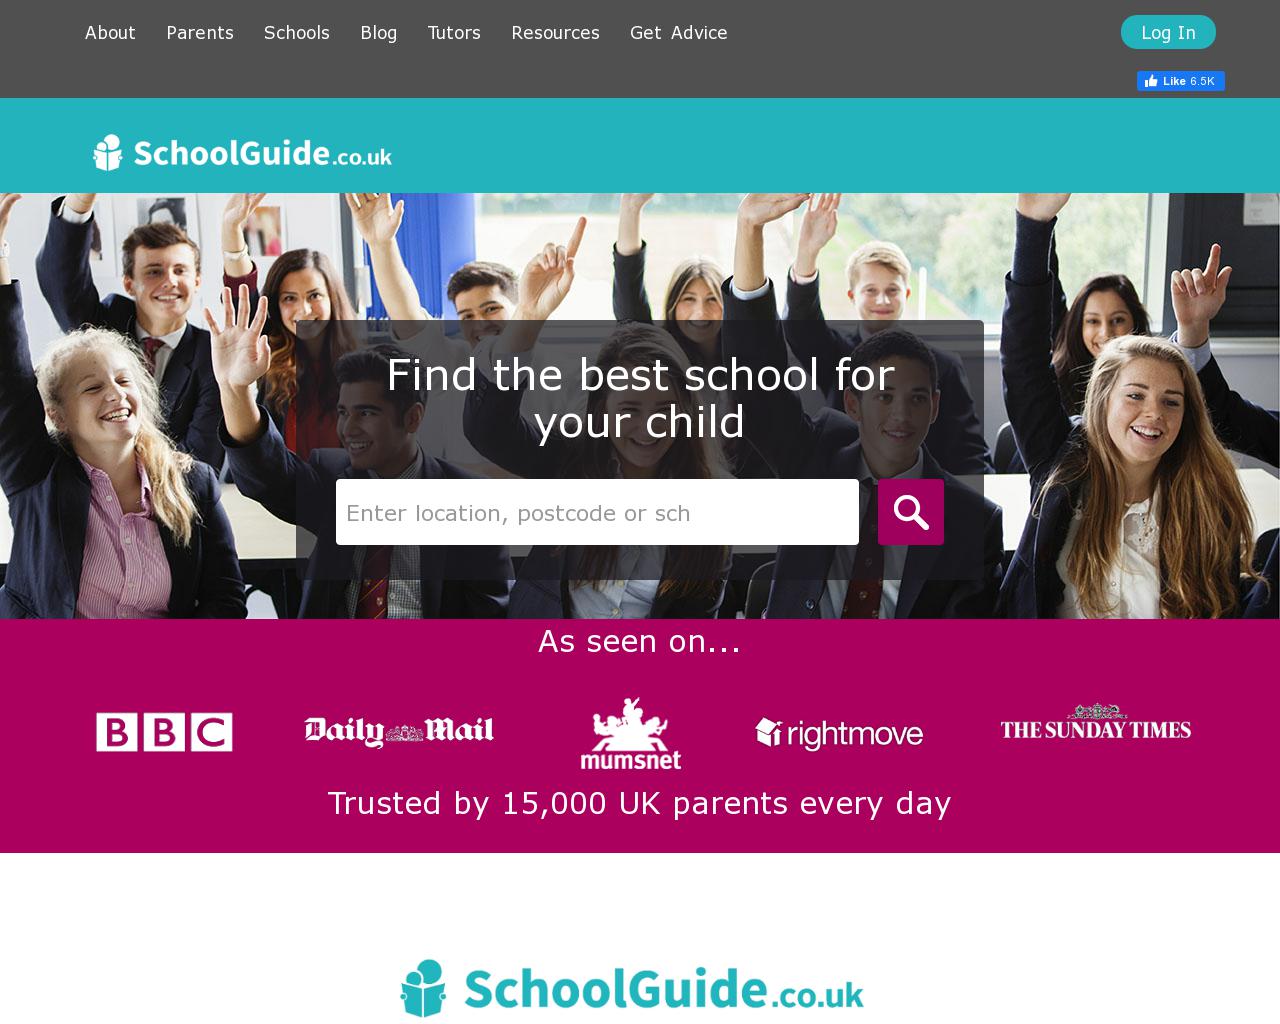 schoolguide.co.uk